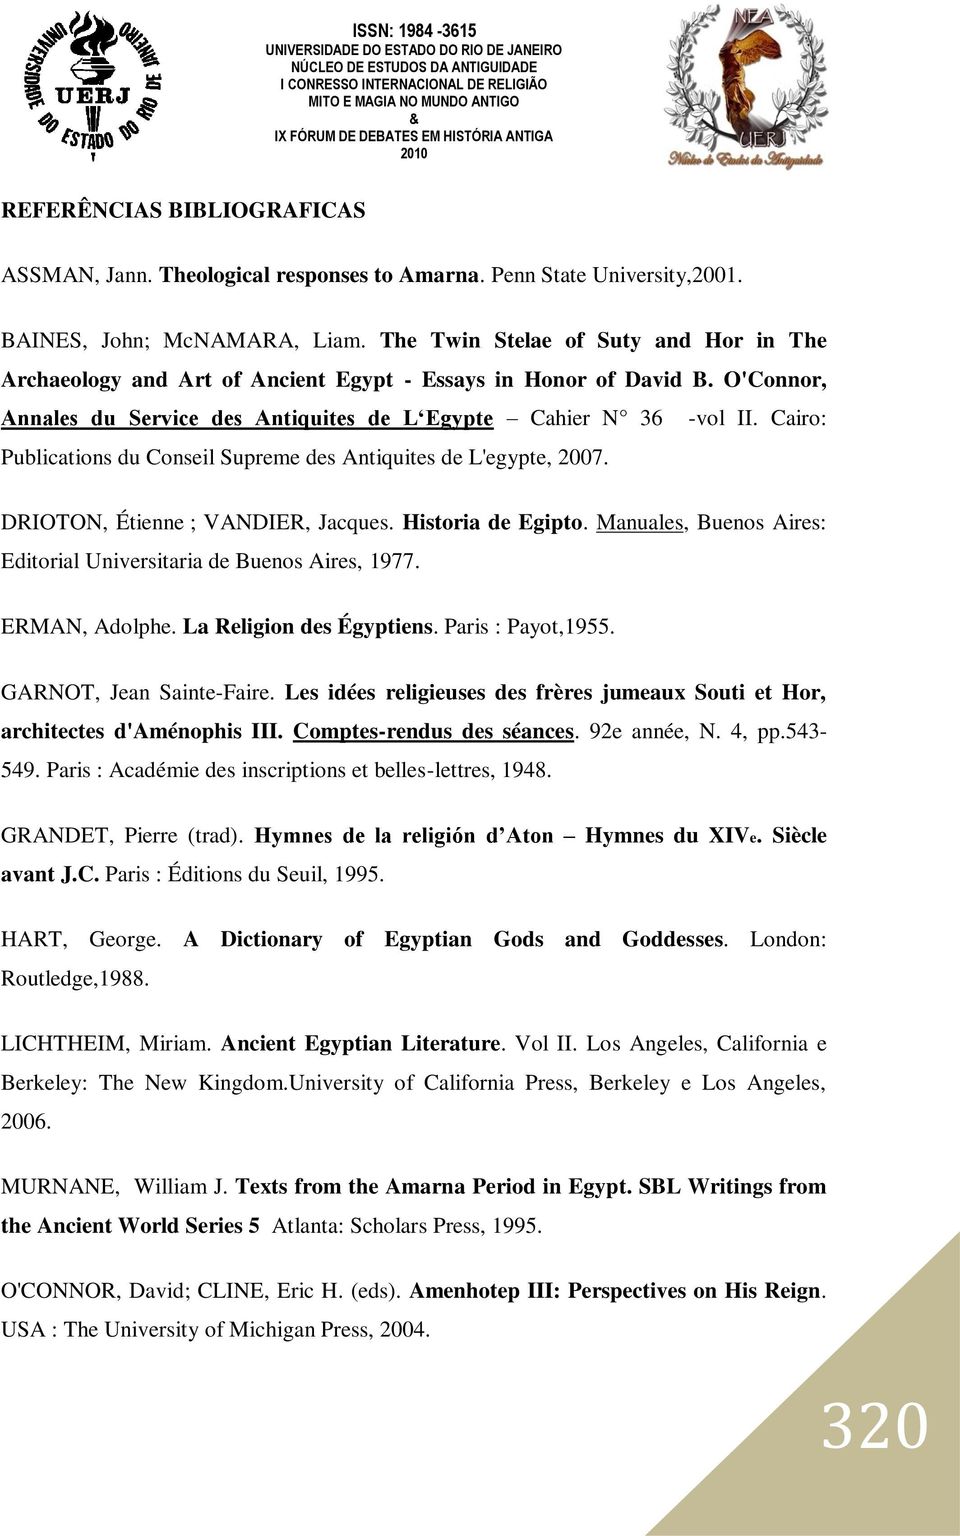 Cairo: Publications du Conseil Supreme des Antiquites de L'egypte, 2007. DRIOTON, Étienne ; VANDIER, Jacques. Historia de Egipto. Manuales, Buenos Aires: Editorial Universitaria de Buenos Aires, 1977.